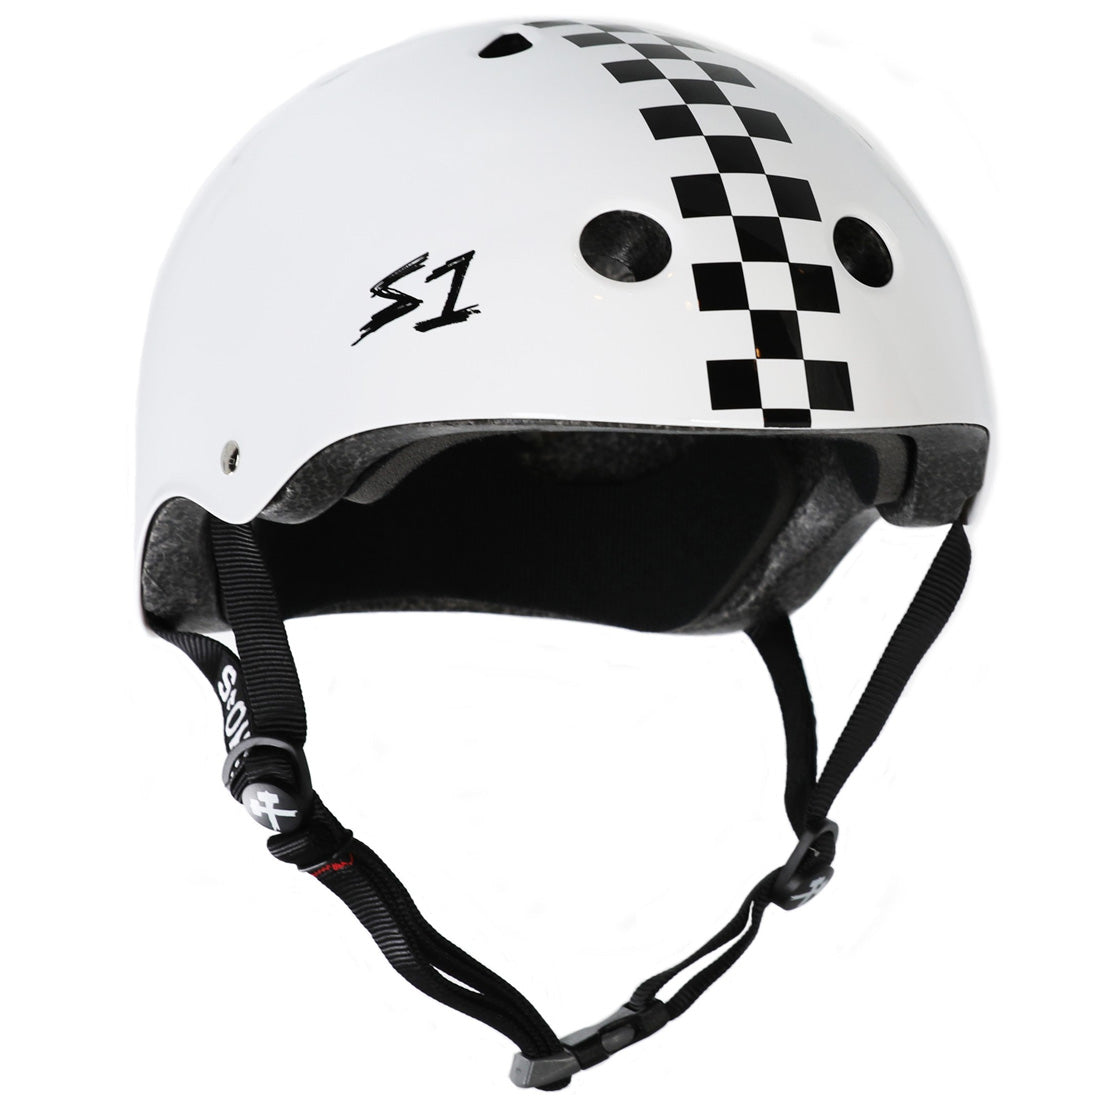 S-One Mega Lifer Helmet - White Gloss/Black Checkers Helmets